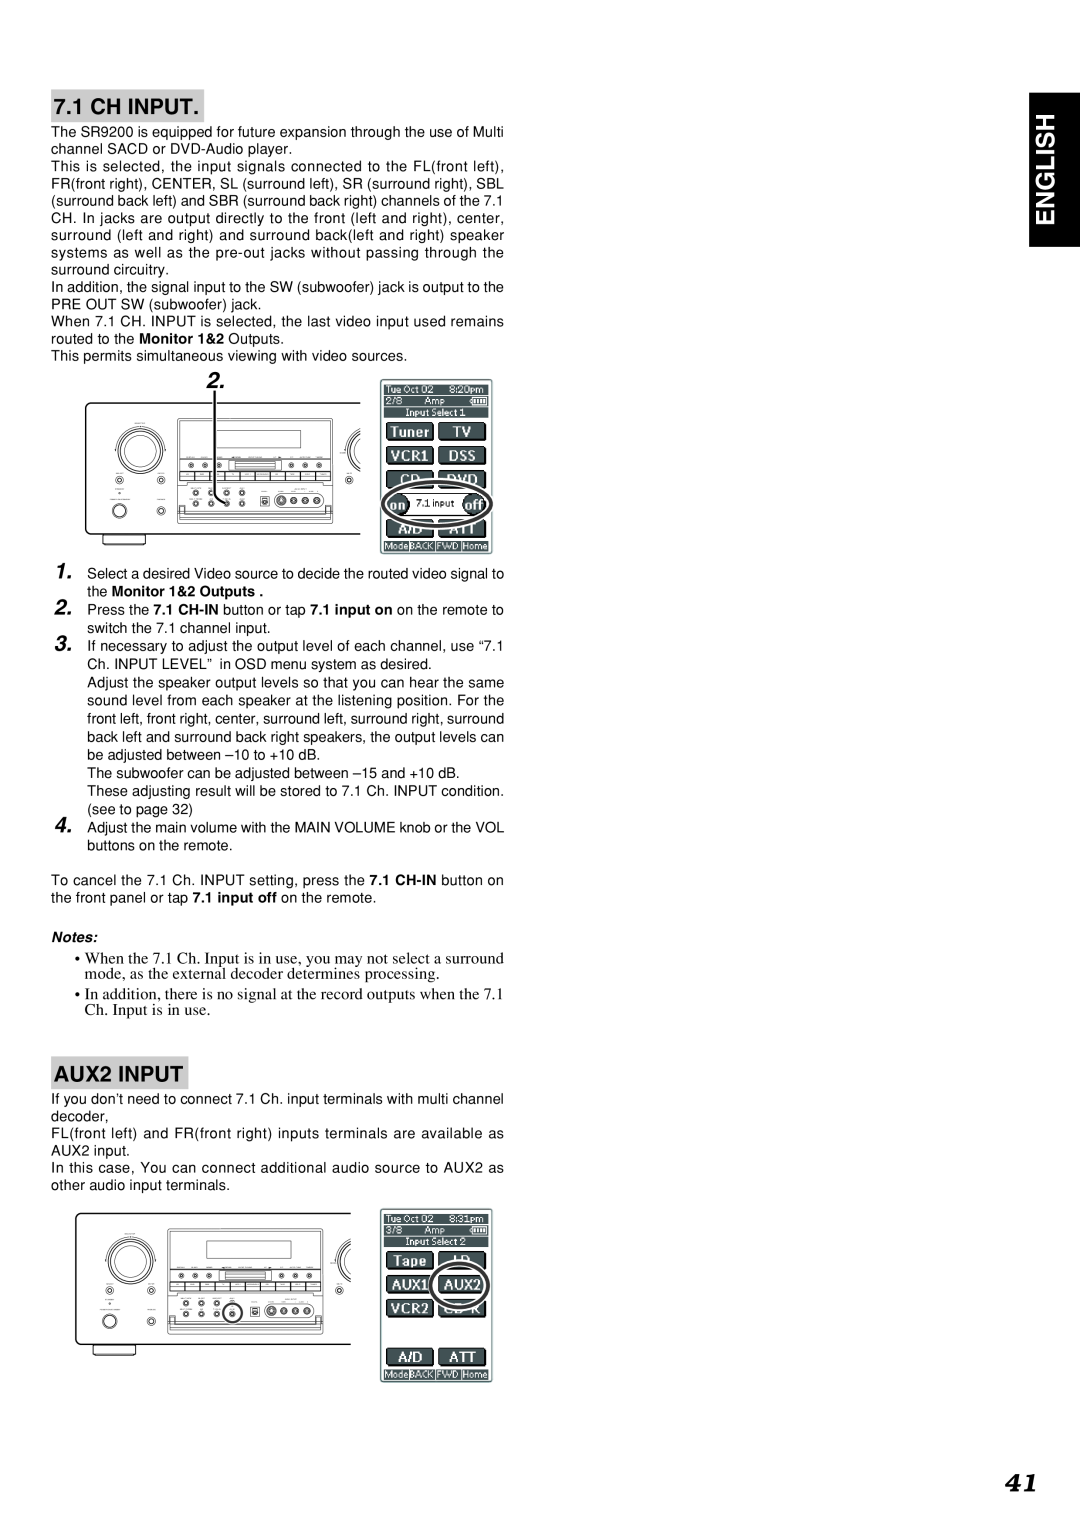 Marantz SR9200 manual English, Ch Input, AUX2 INPUT 